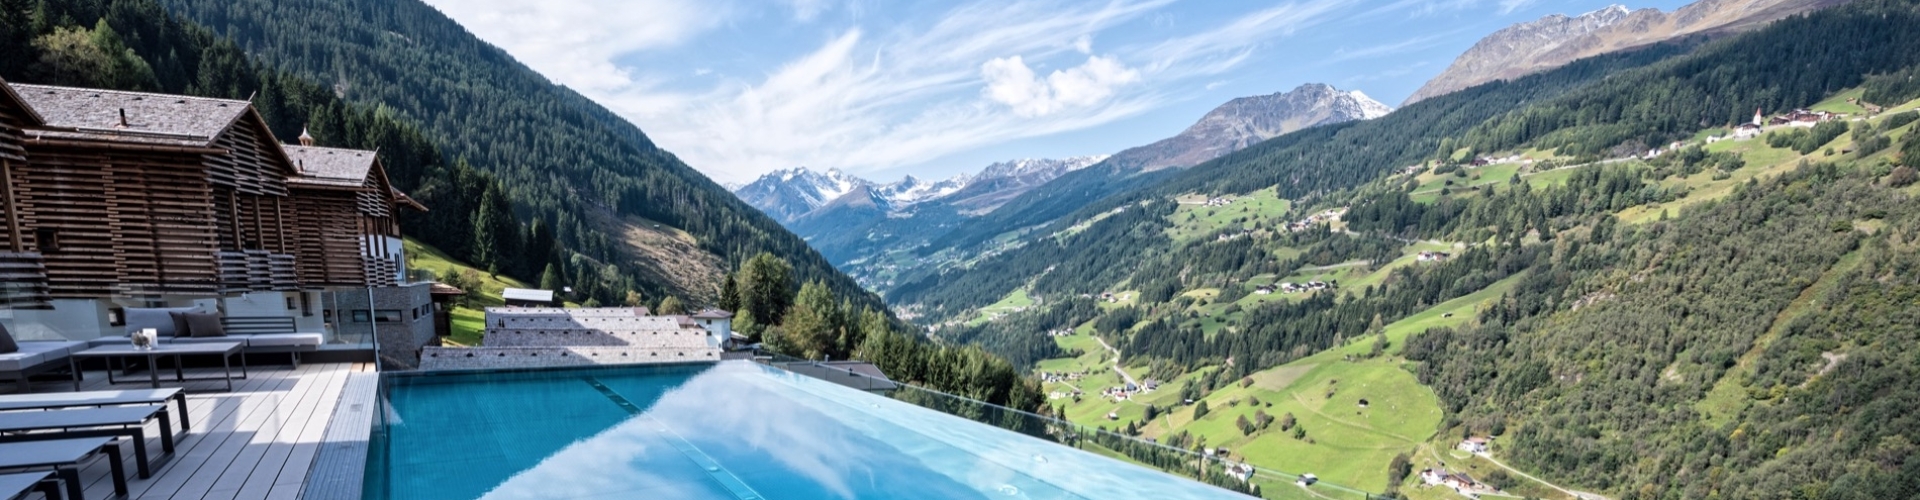 Infinitypool luxe hotel Oostenrijk